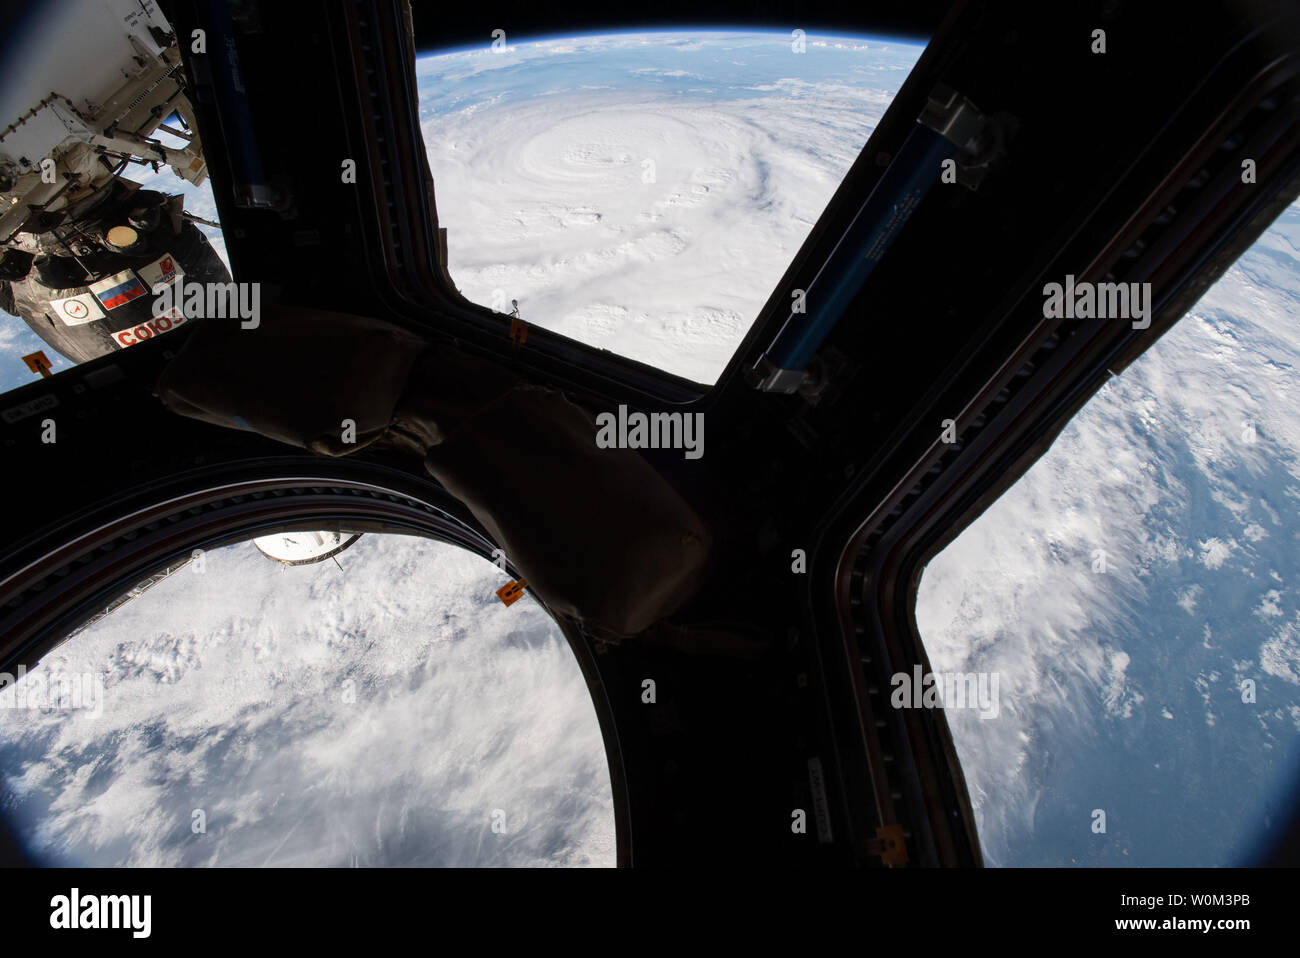 Le 25 août 2017, l'astronaute de la NASA Jack Fischer photographié l'ouragan Harvey du module Cupola à bord de la Station spatiale internationale comme elle s'est intensifiée sur son chemin vers la côte du Texas. L'équipage de l'Expédition 52 sur la station a fait le suivi de cette tempête depuis deux jours d'observation de la Terre et la capture de photos et vidéos à partir de leur point de vue en orbite terrestre basse. NASA/UPI.. Banque D'Images